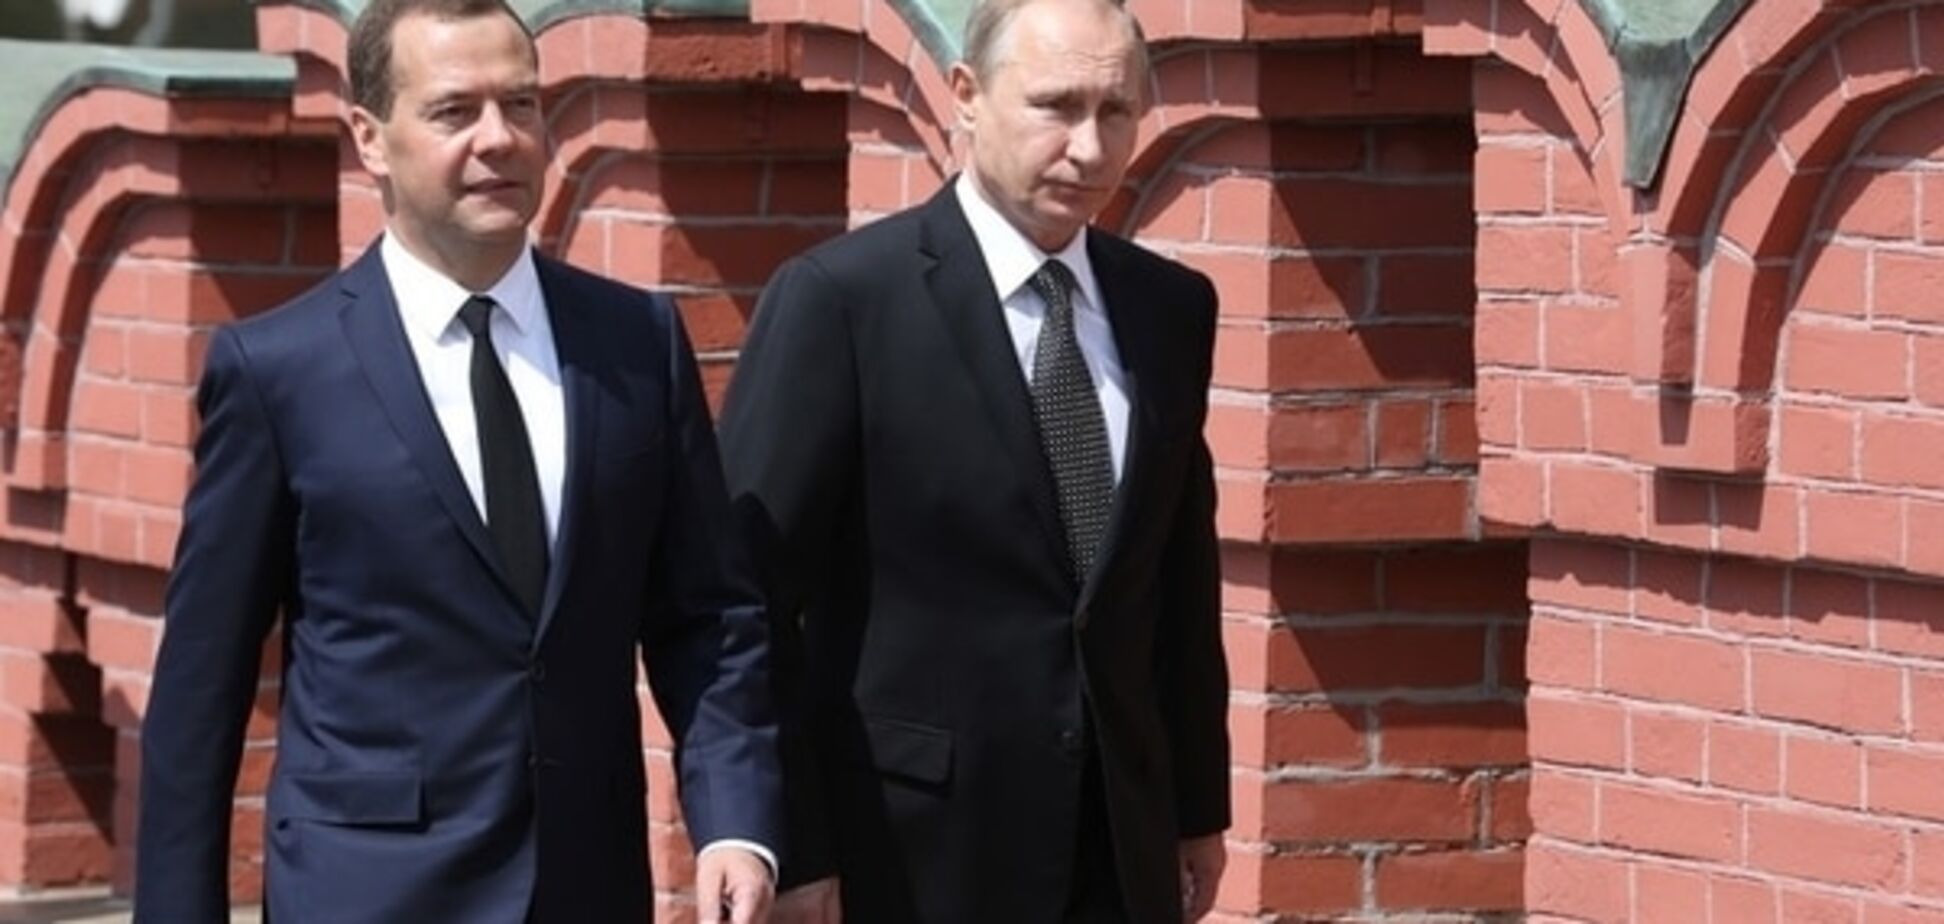 Аналитик: смерть или свержение Путина для Украины - не выход